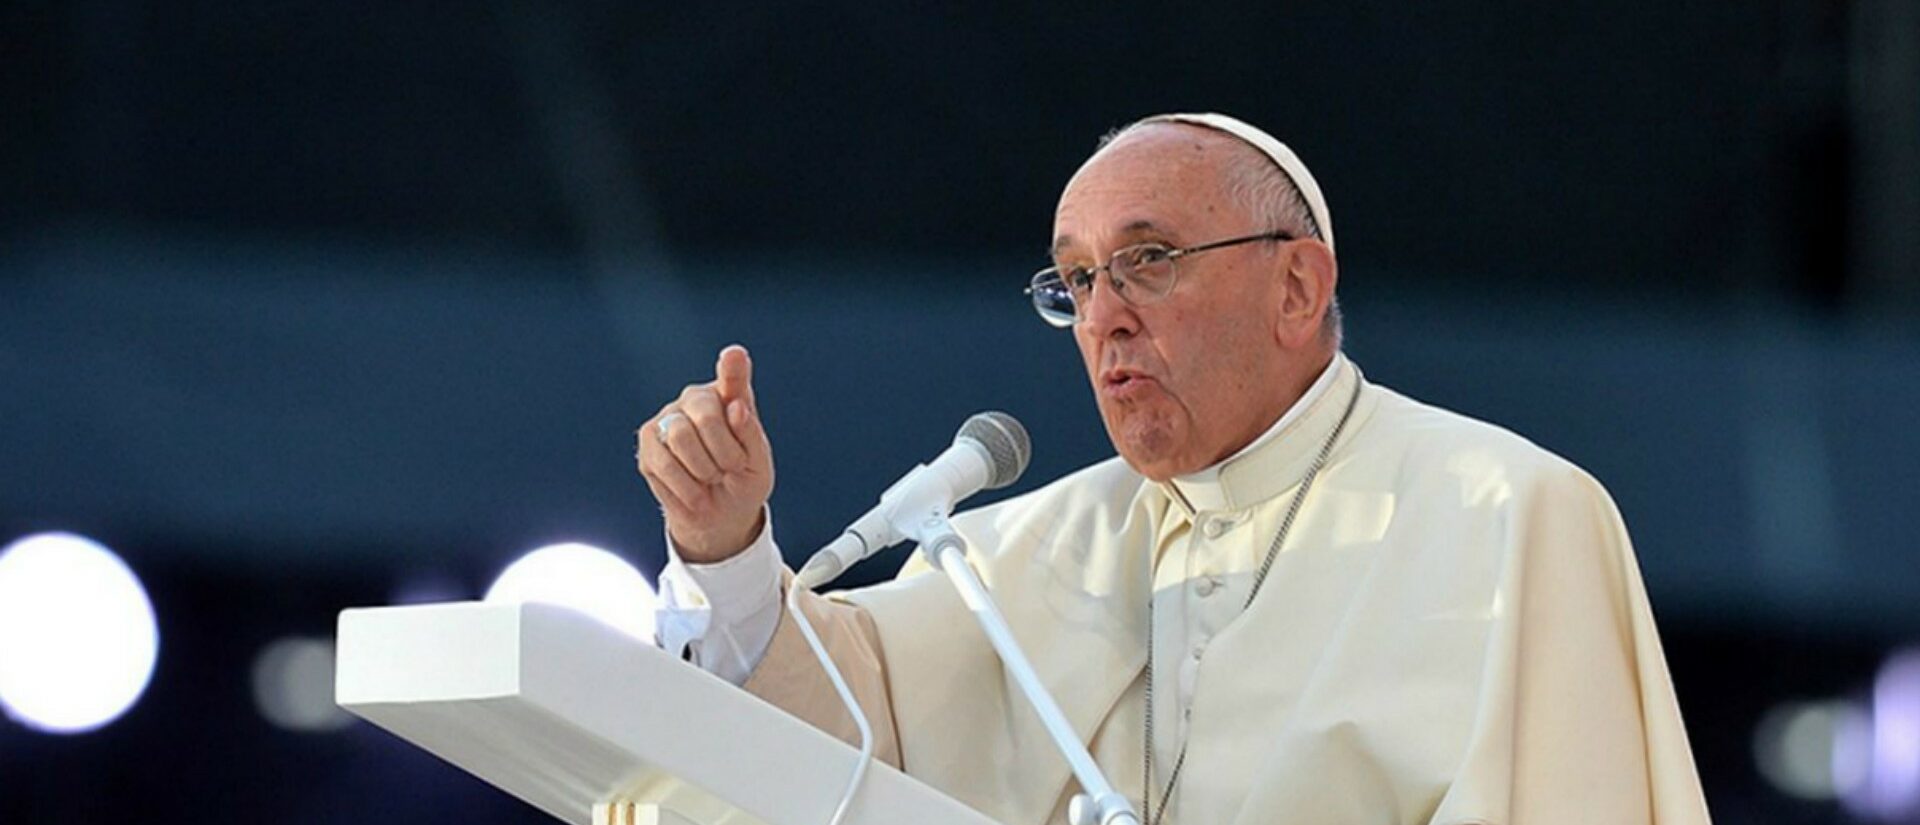 "Lorsque les gens veulent exclure Dieu de la société, ils finissent par adorer des idoles", a déclaré le pape François    